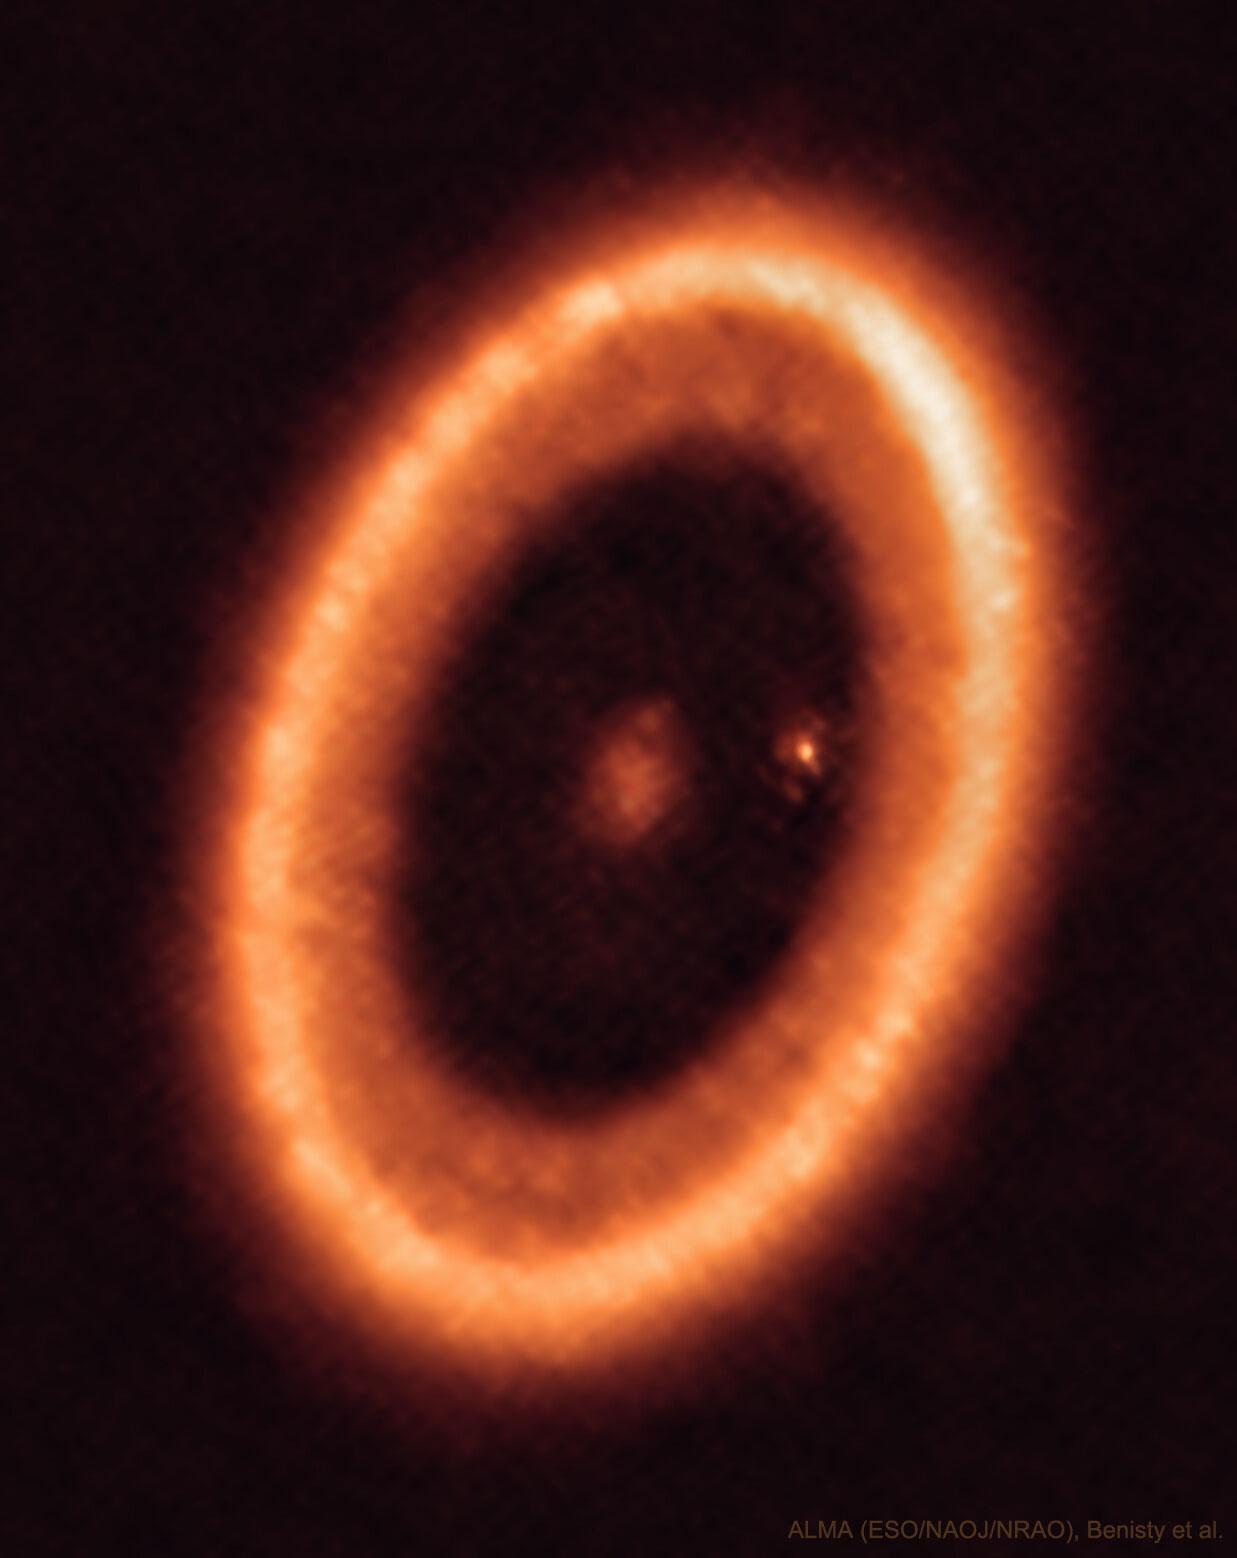 تُظهر الصورة تشكّل كوكب في النظام النجمي پي‌دي‌إس 70. حيث يمكن رؤية حلقة تشكّل كوكبيّة وأيضاً كوكب وحوله حلقة تشكّل قمري على ما يبدو.